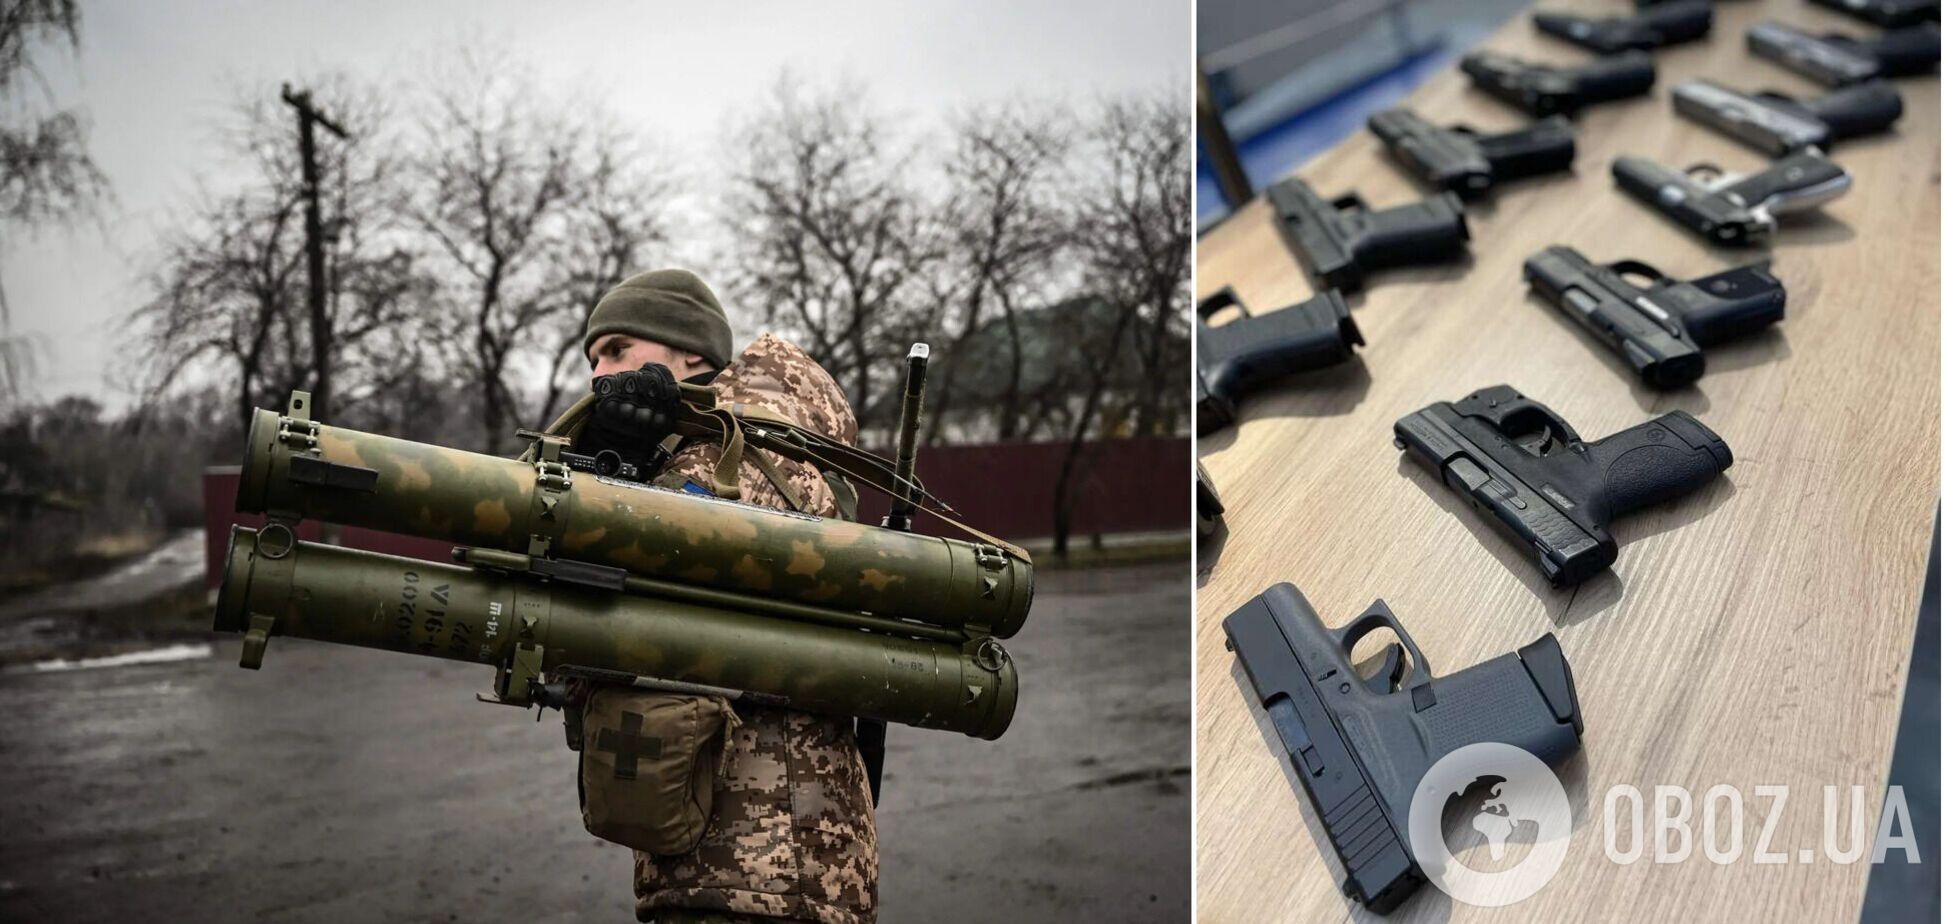 Представители Украины и США провели первую совместную инспекцию американского оружия: какие результаты